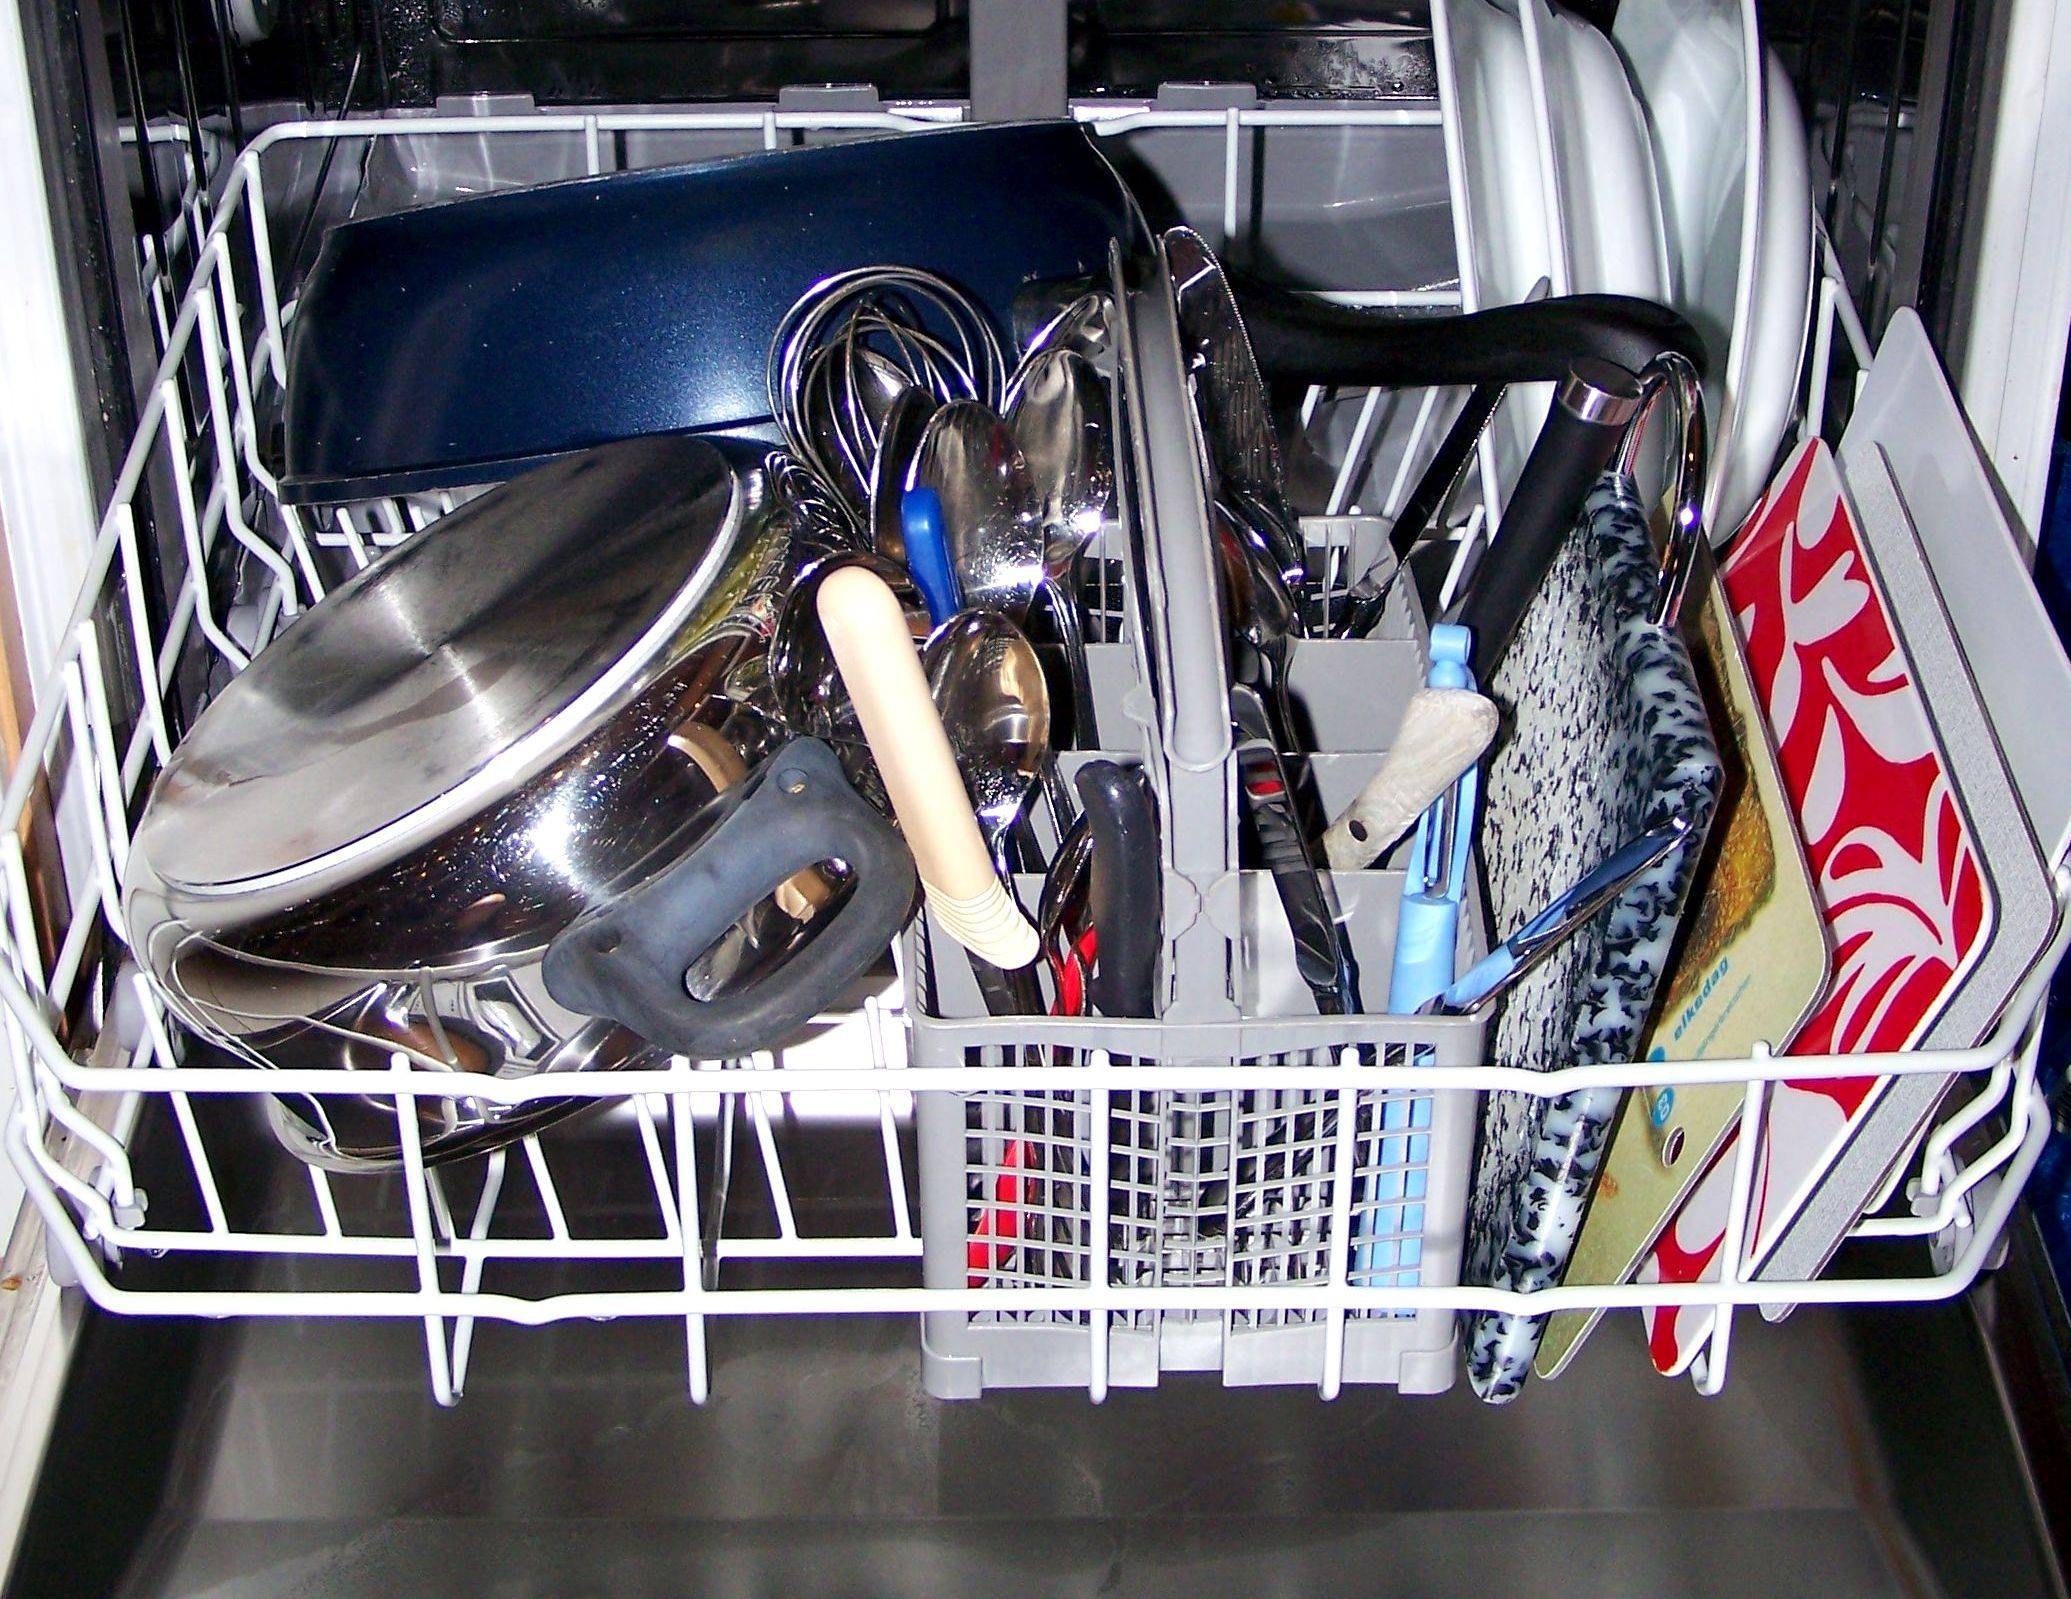 Как загружать посуду в посудомоечную машину и правильно ее мыть?